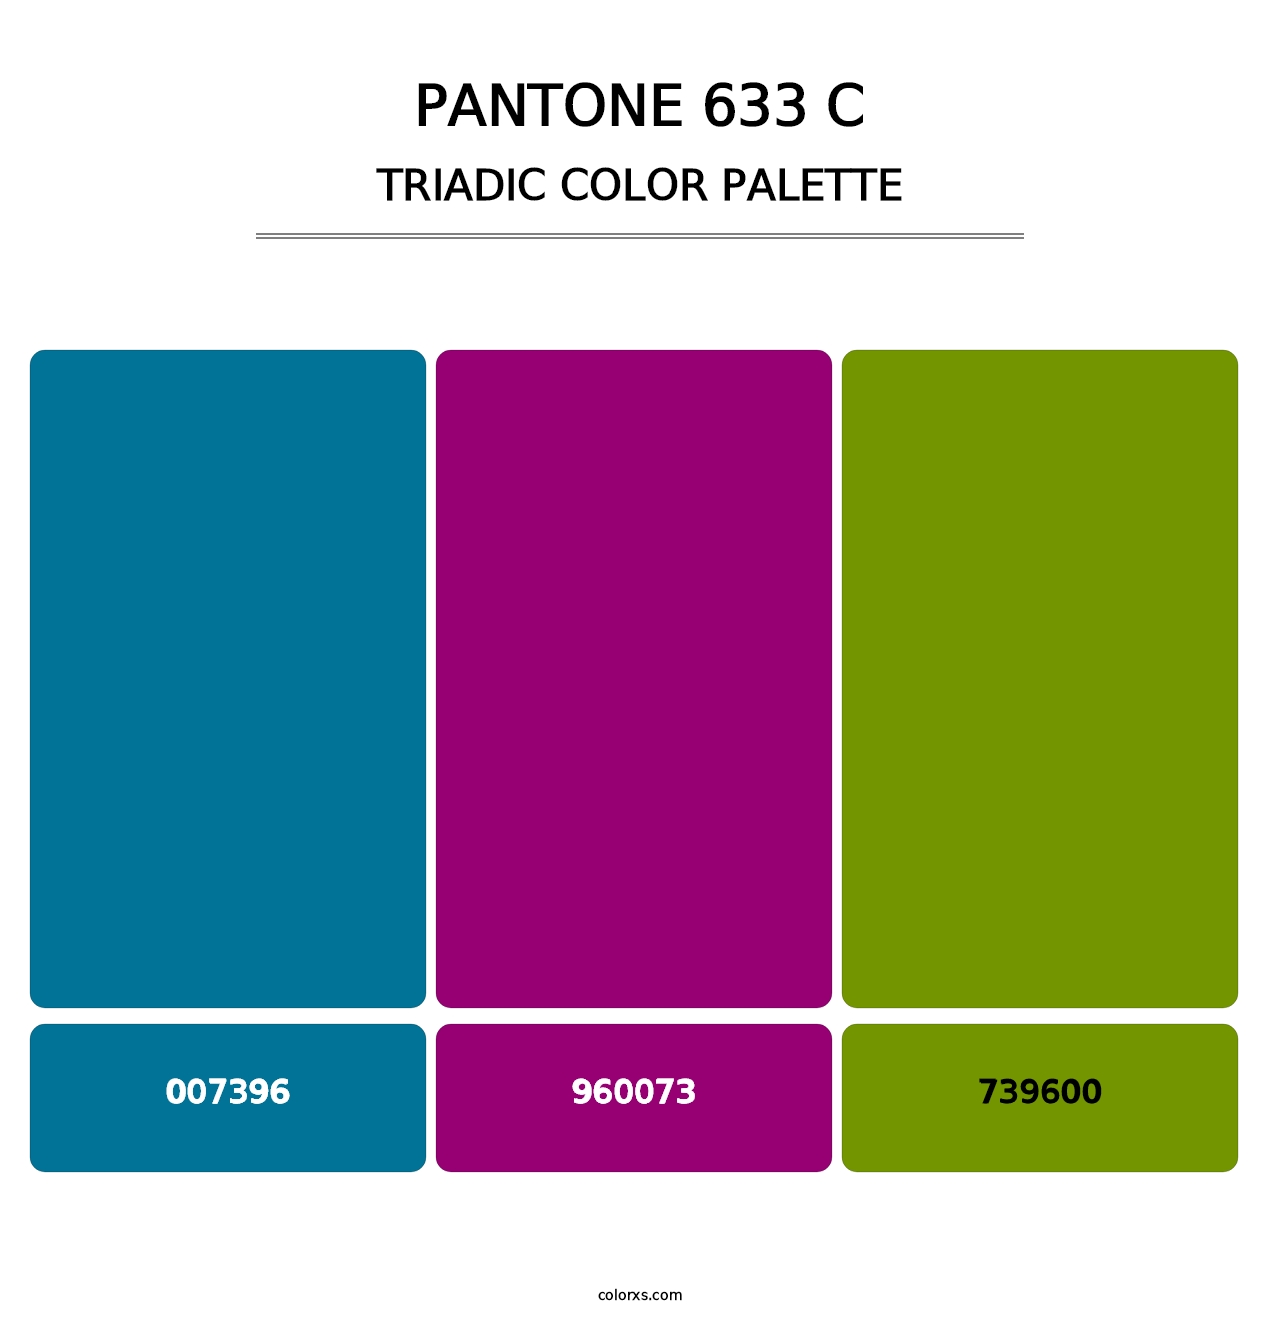 PANTONE 633 C - Triadic Color Palette